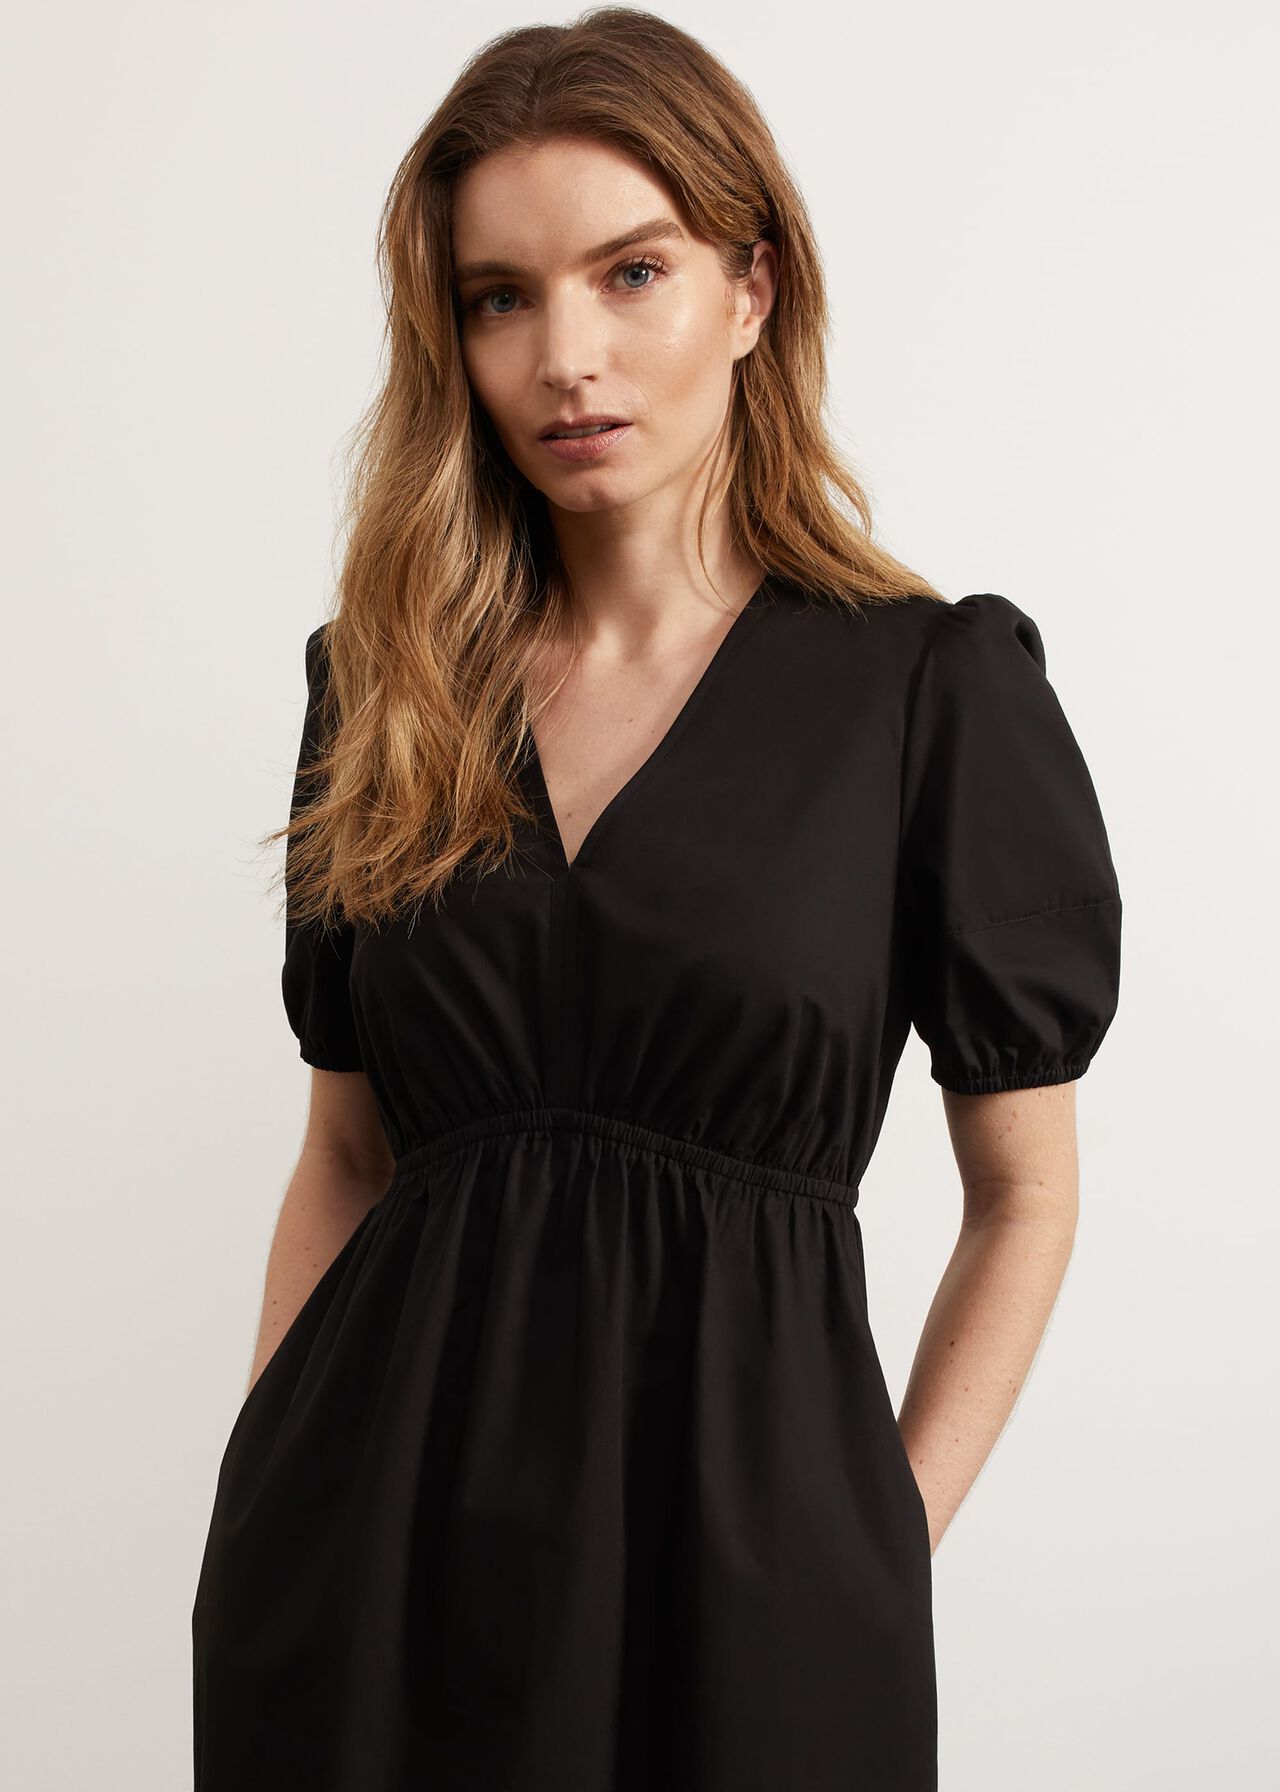 Meadley Dress, Black, hi-res